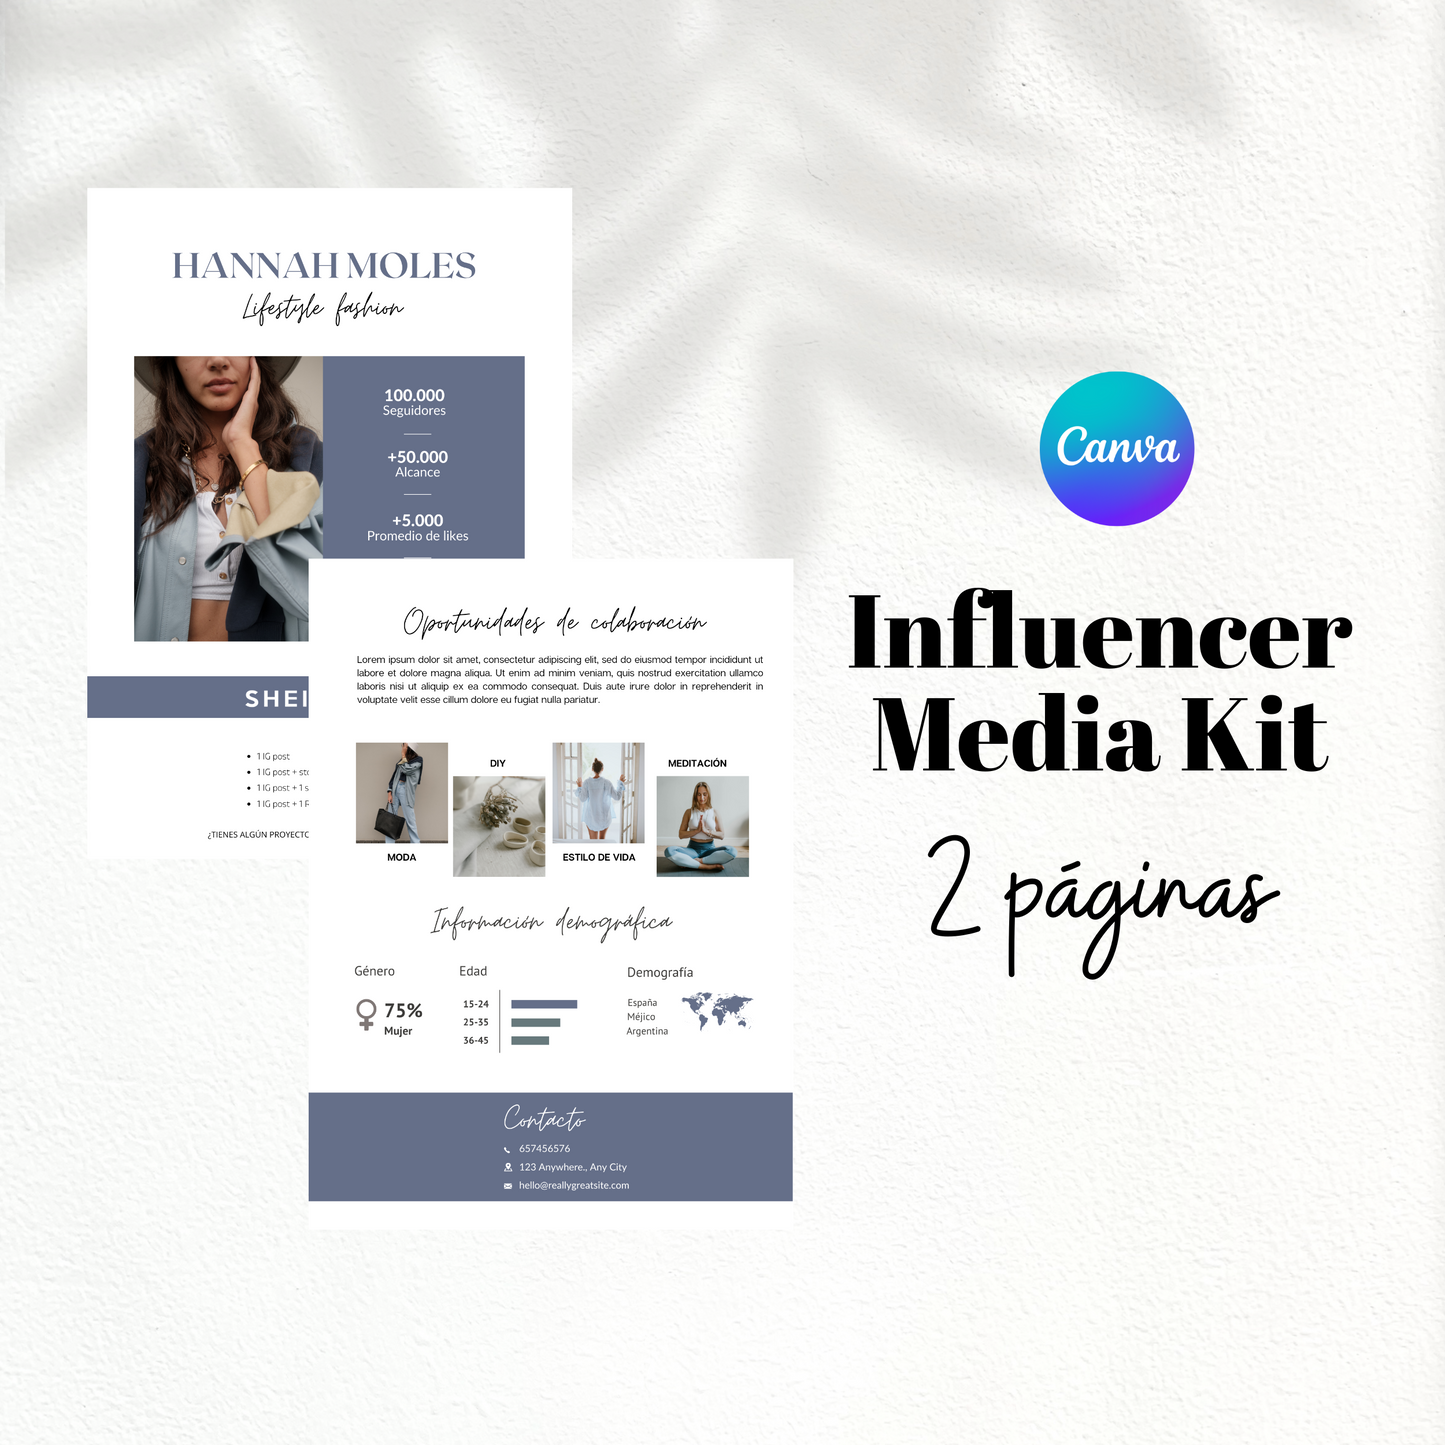 Media Kit Influencer 2 páginas (plantilla)